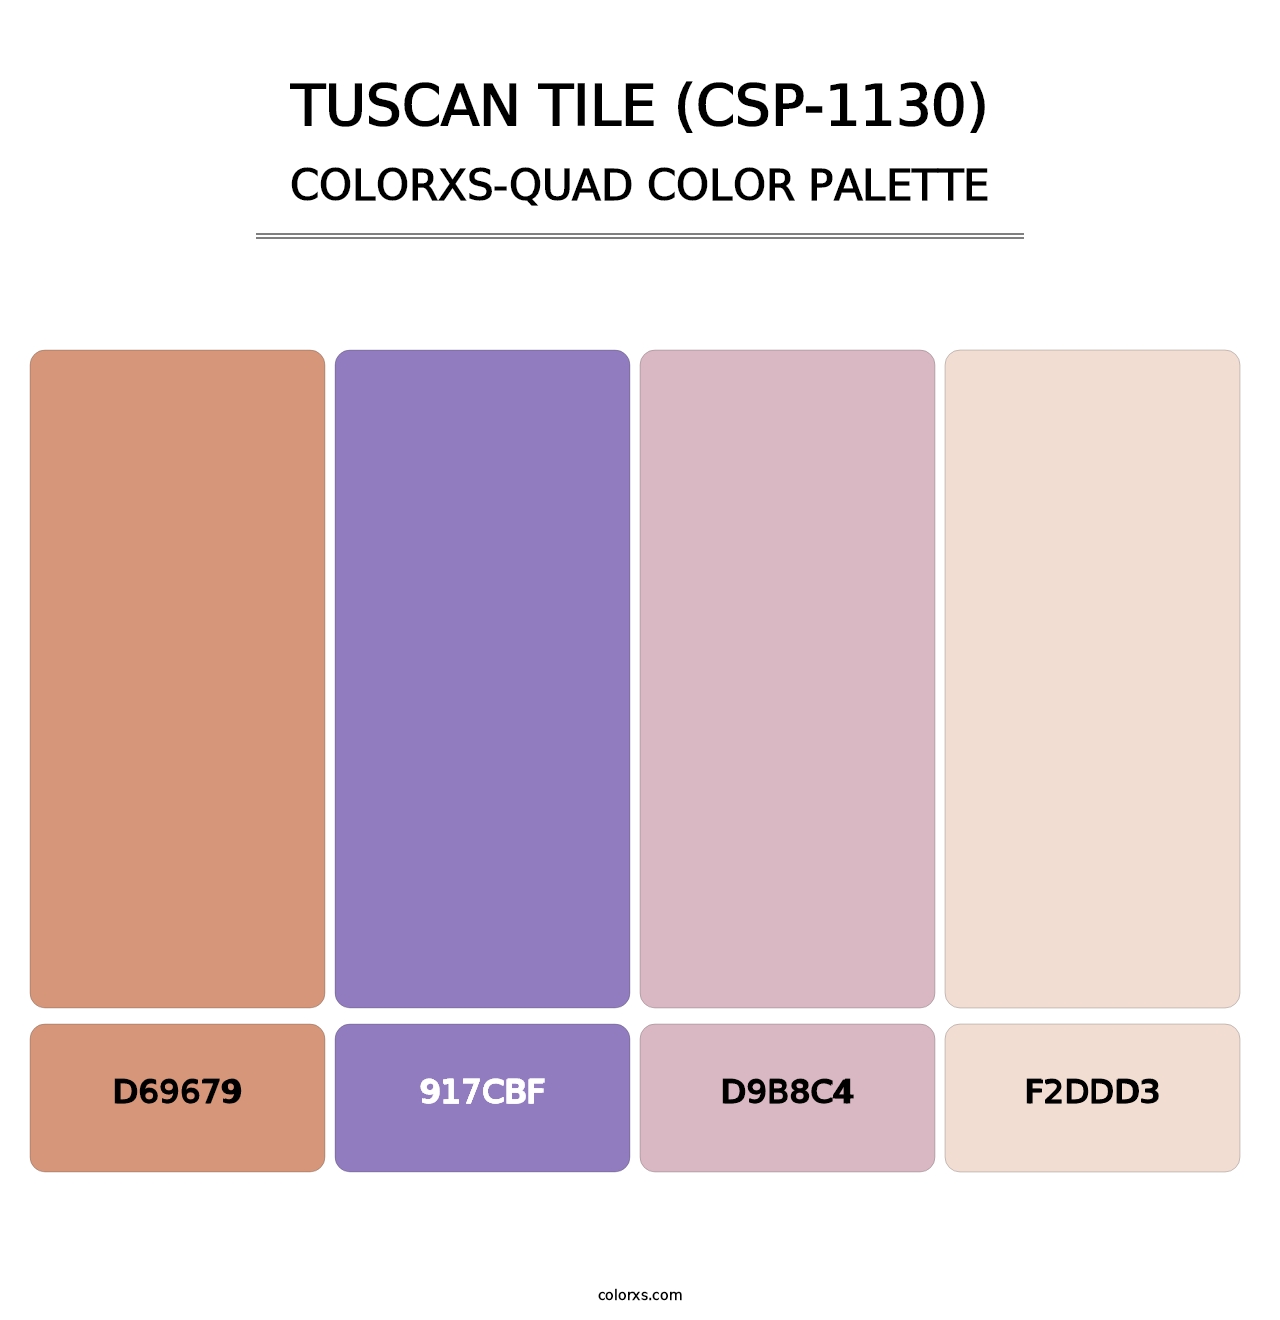 Tuscan Tile (CSP-1130) - Colorxs Quad Palette